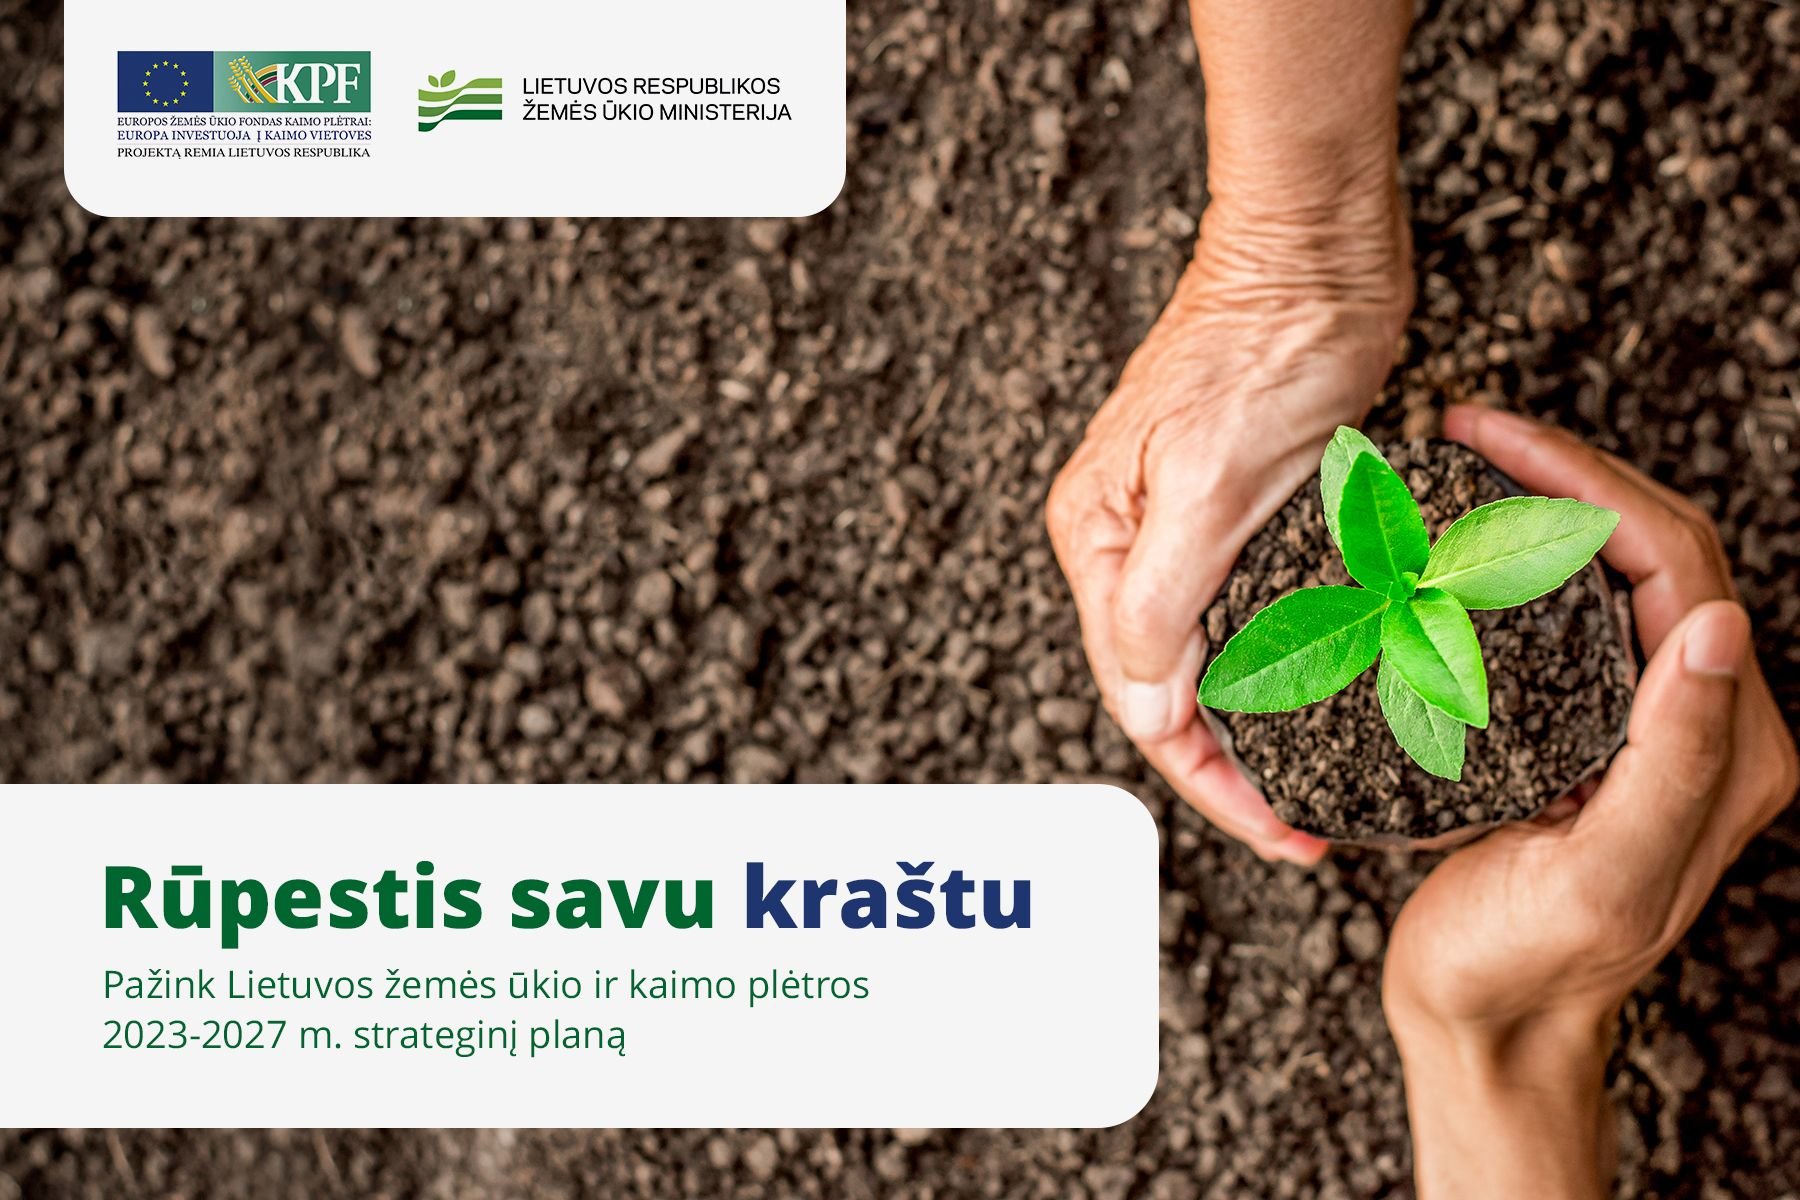 „Rūpestis savu kraštu“ – specialusis Žemės ūkio ministerijos (ŽŪM) inicijuotas turinio projektas, kuriuo siekiama supažindinti visuomenę apie Lietuvos žemės ūkio ir kaimo plėtros 2023–2027 m. strateginį planą: svarbiausi pokyčiai ir naujovės.